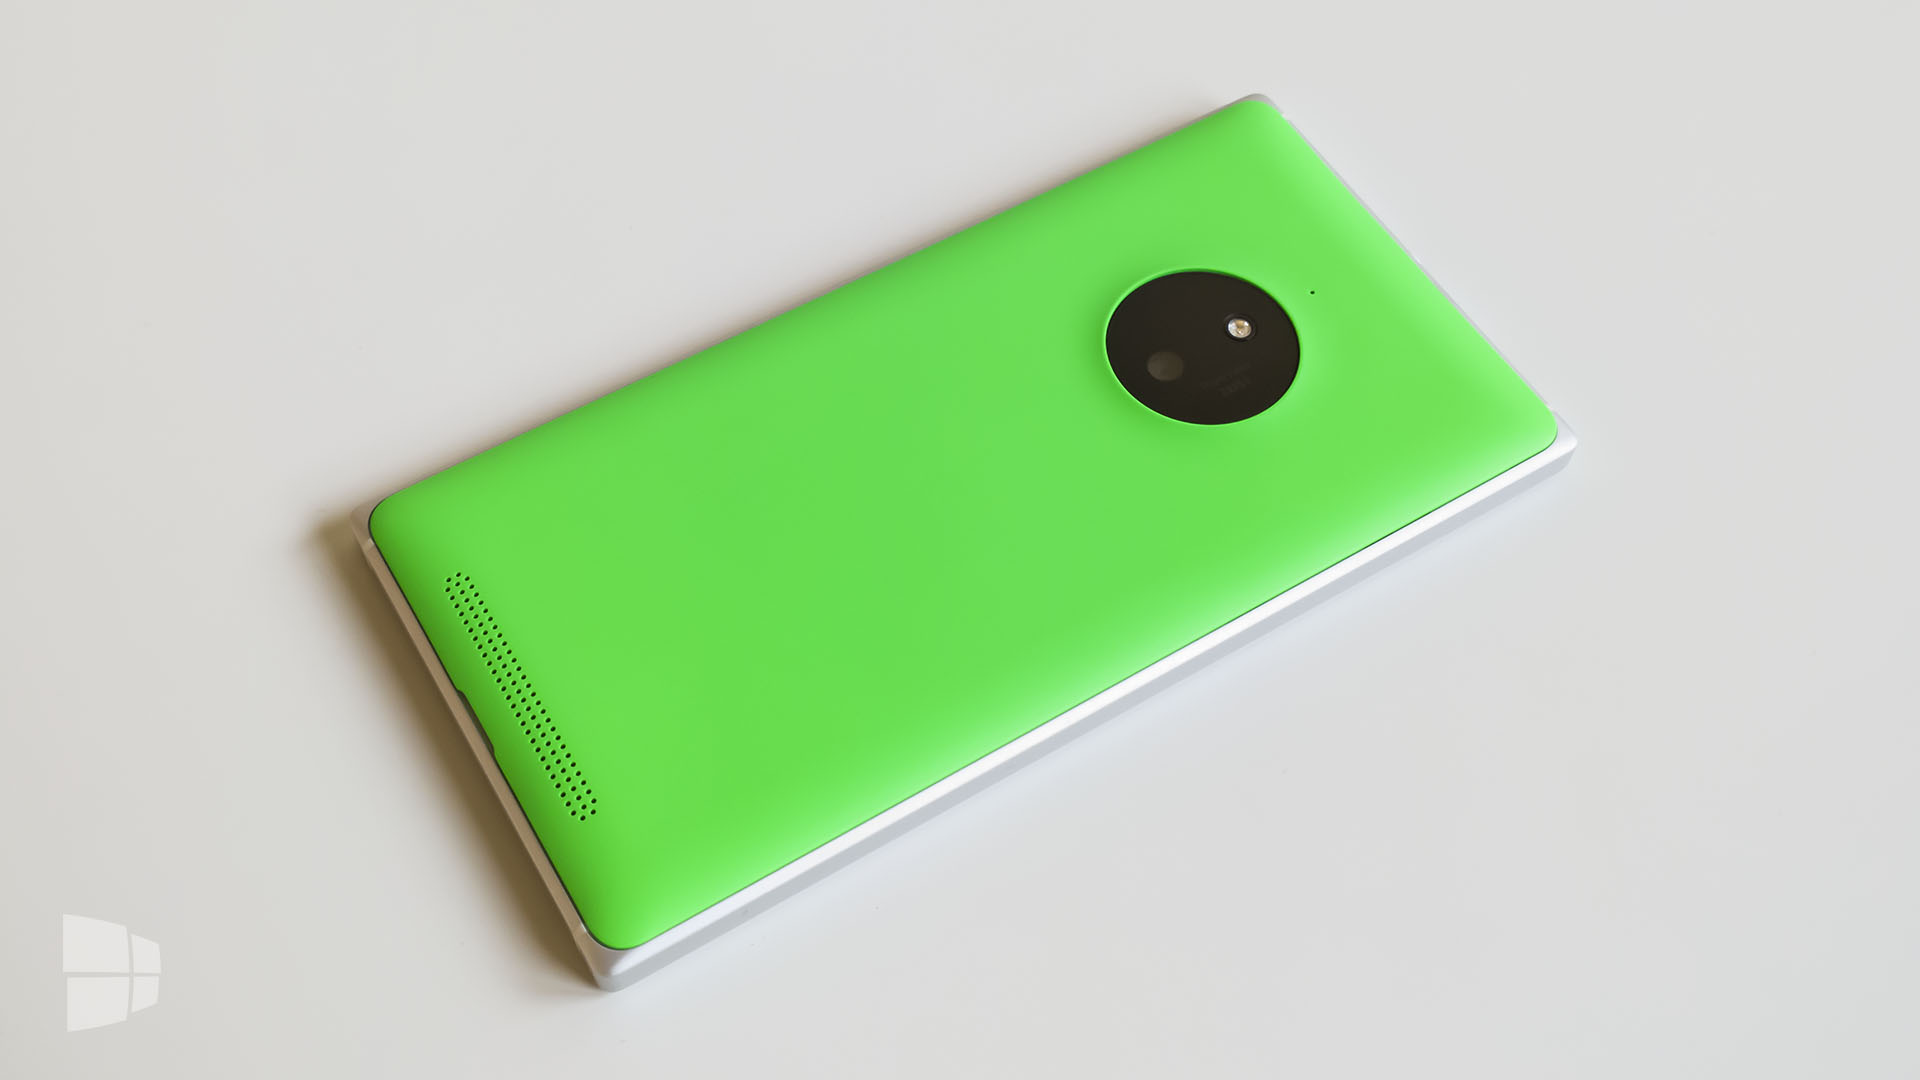 Nokia Lumia 830 (6)